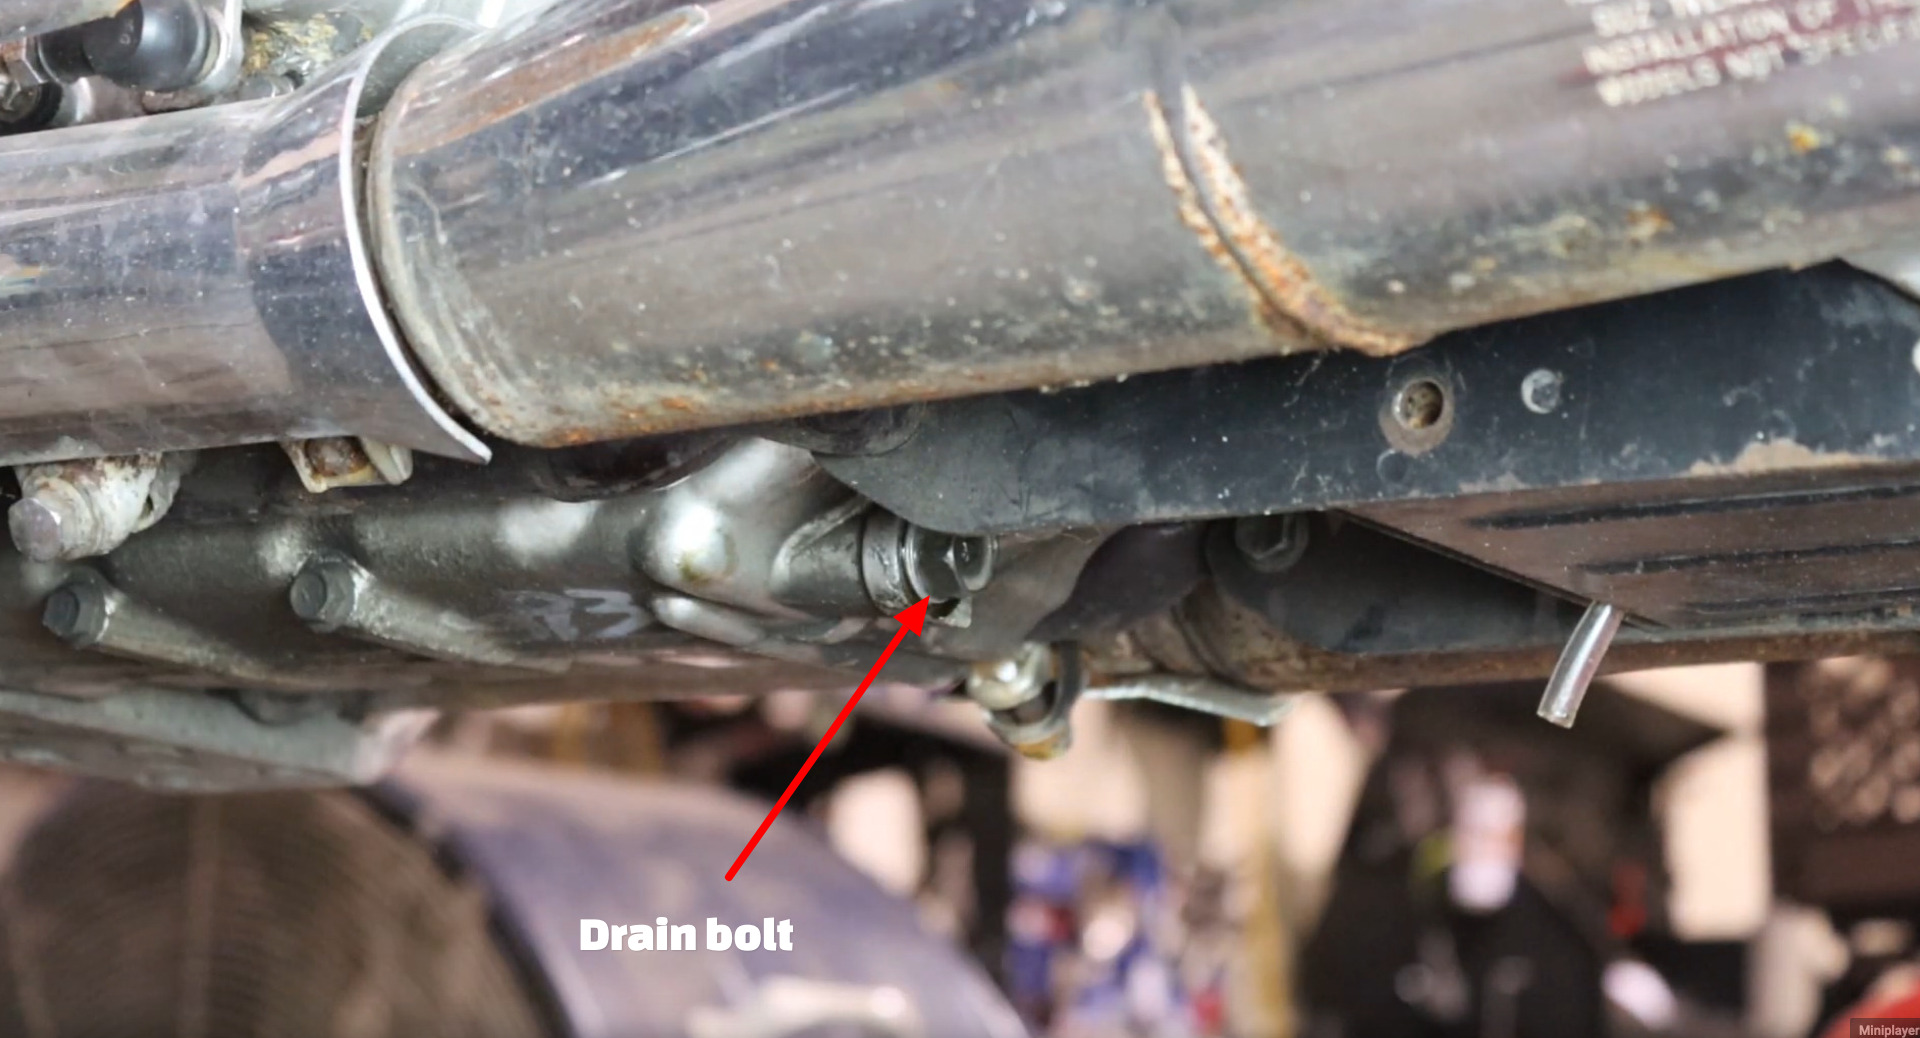 Suzuki Intruder oil change drain bolt